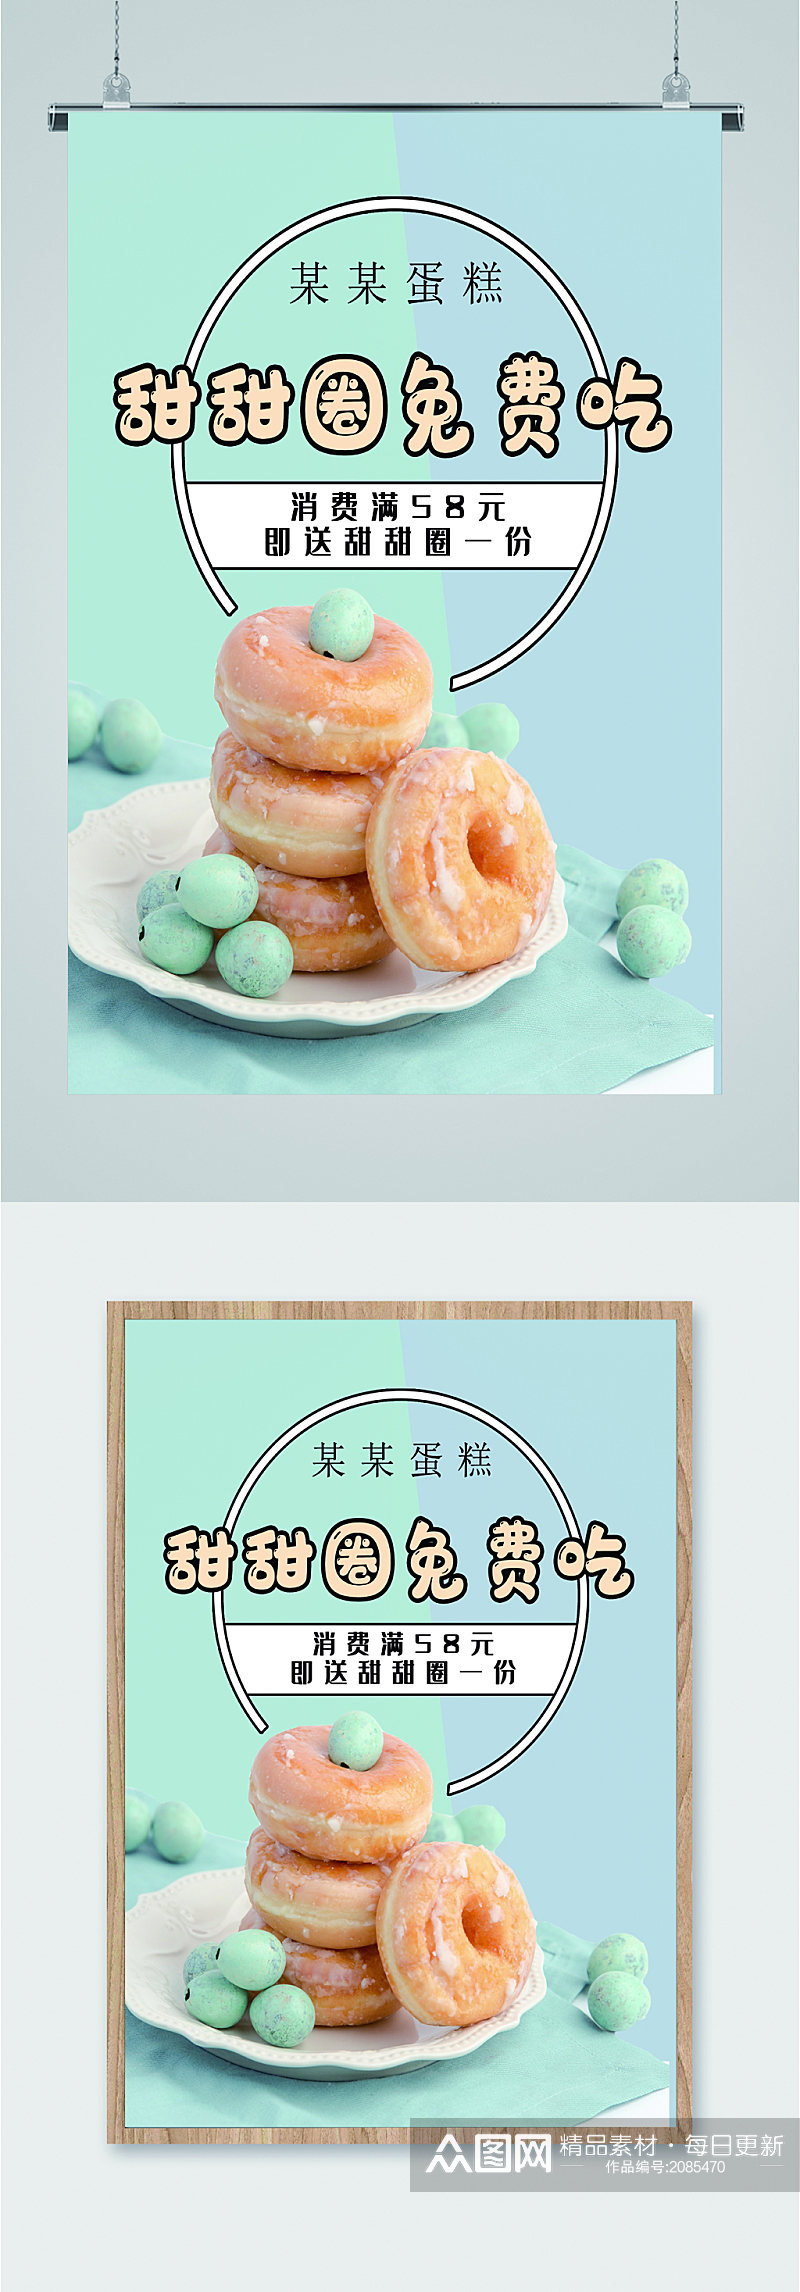 甜甜圈免费吃促销海报素材